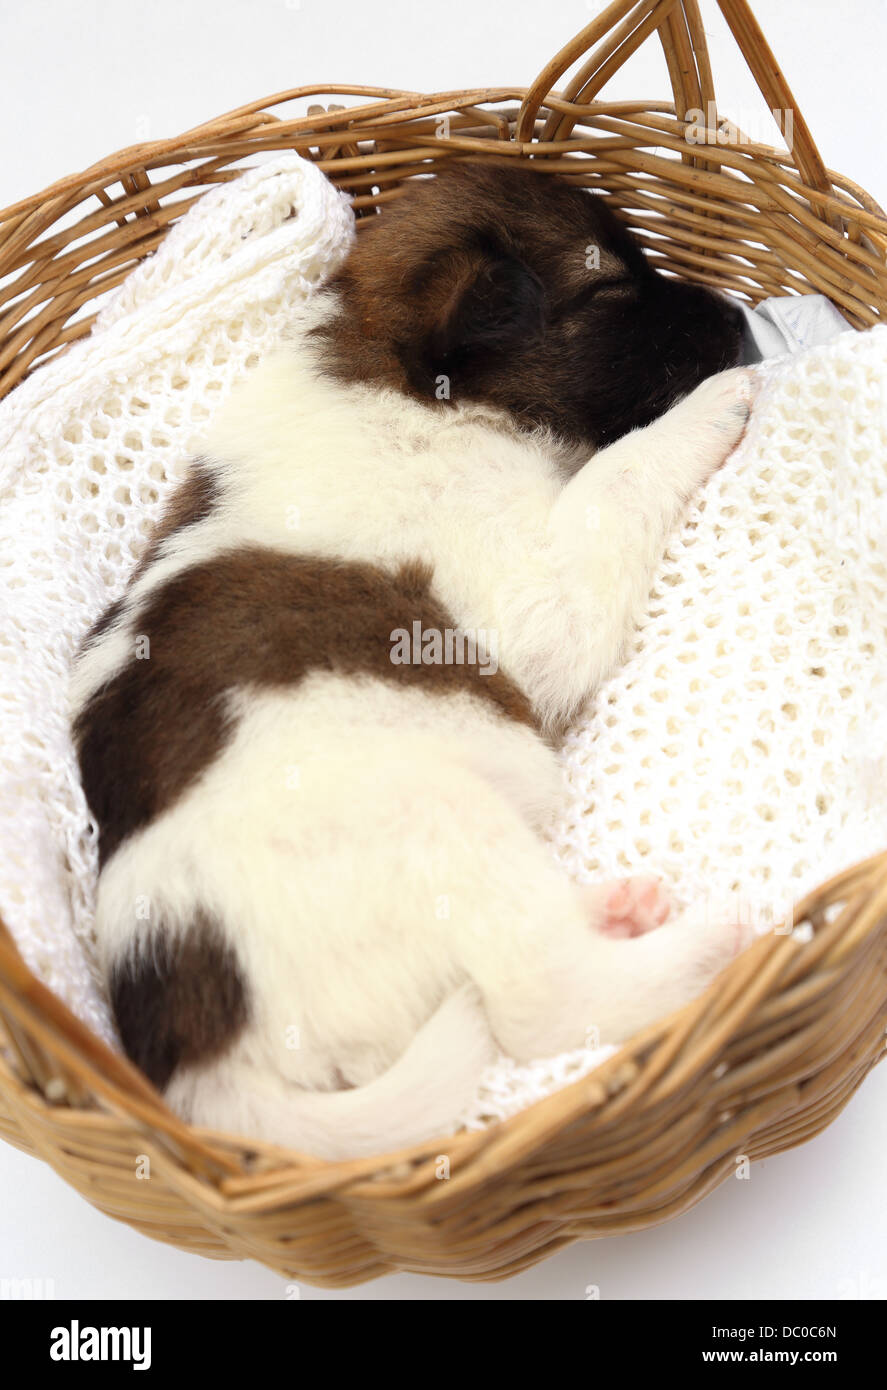 Piccolo cucciolo di cane dorme nel cestino Foto Stock